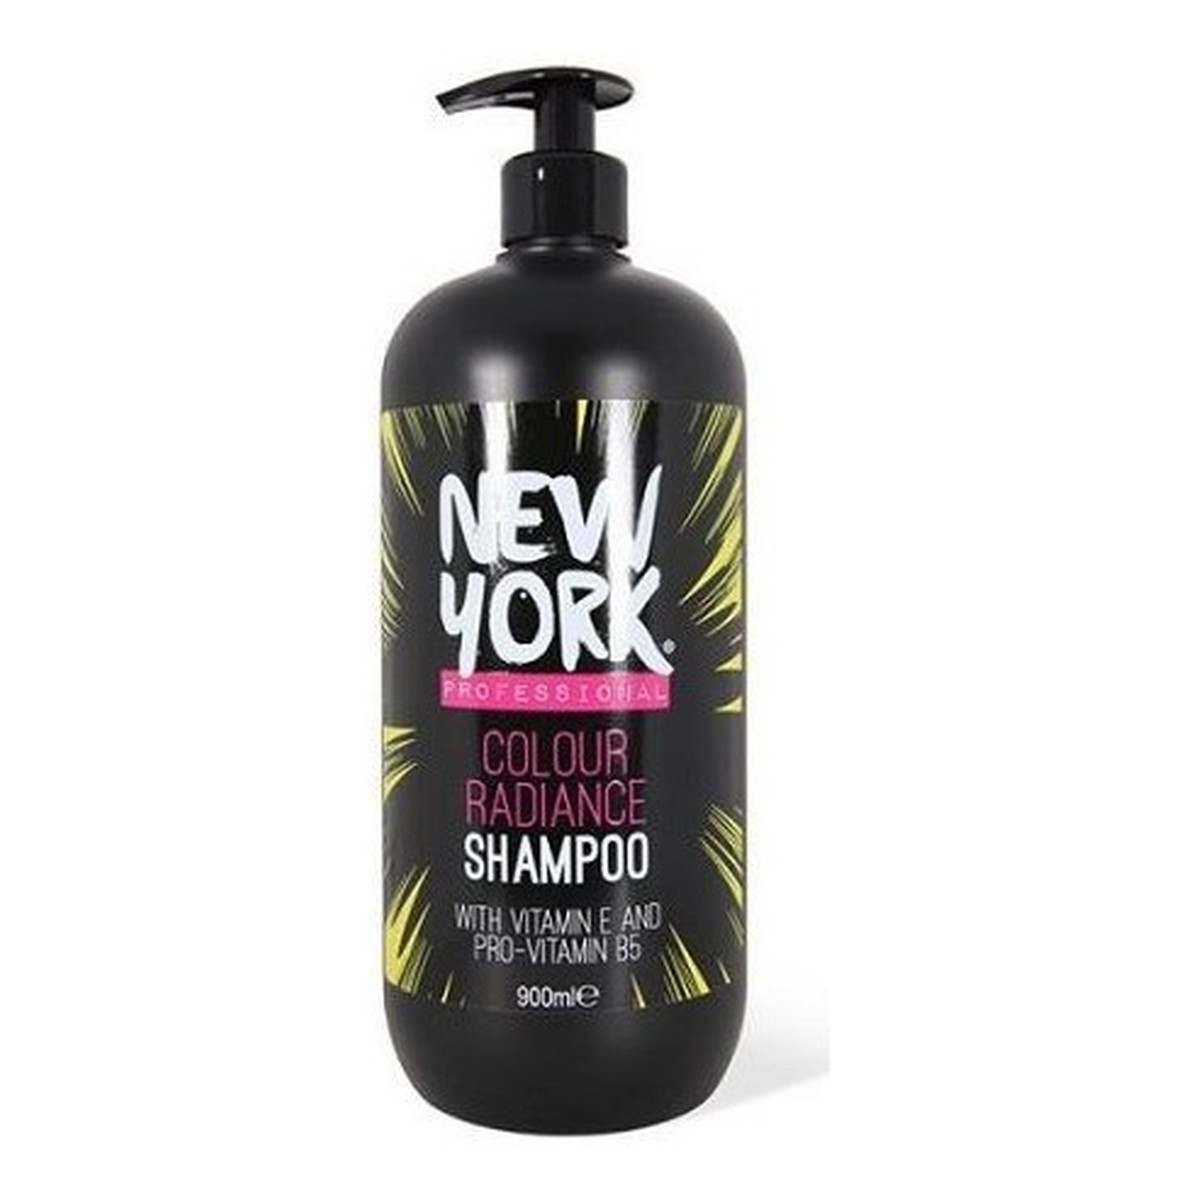 New York Professional Colour Radiance szampon do włosów farbowanych 900ml